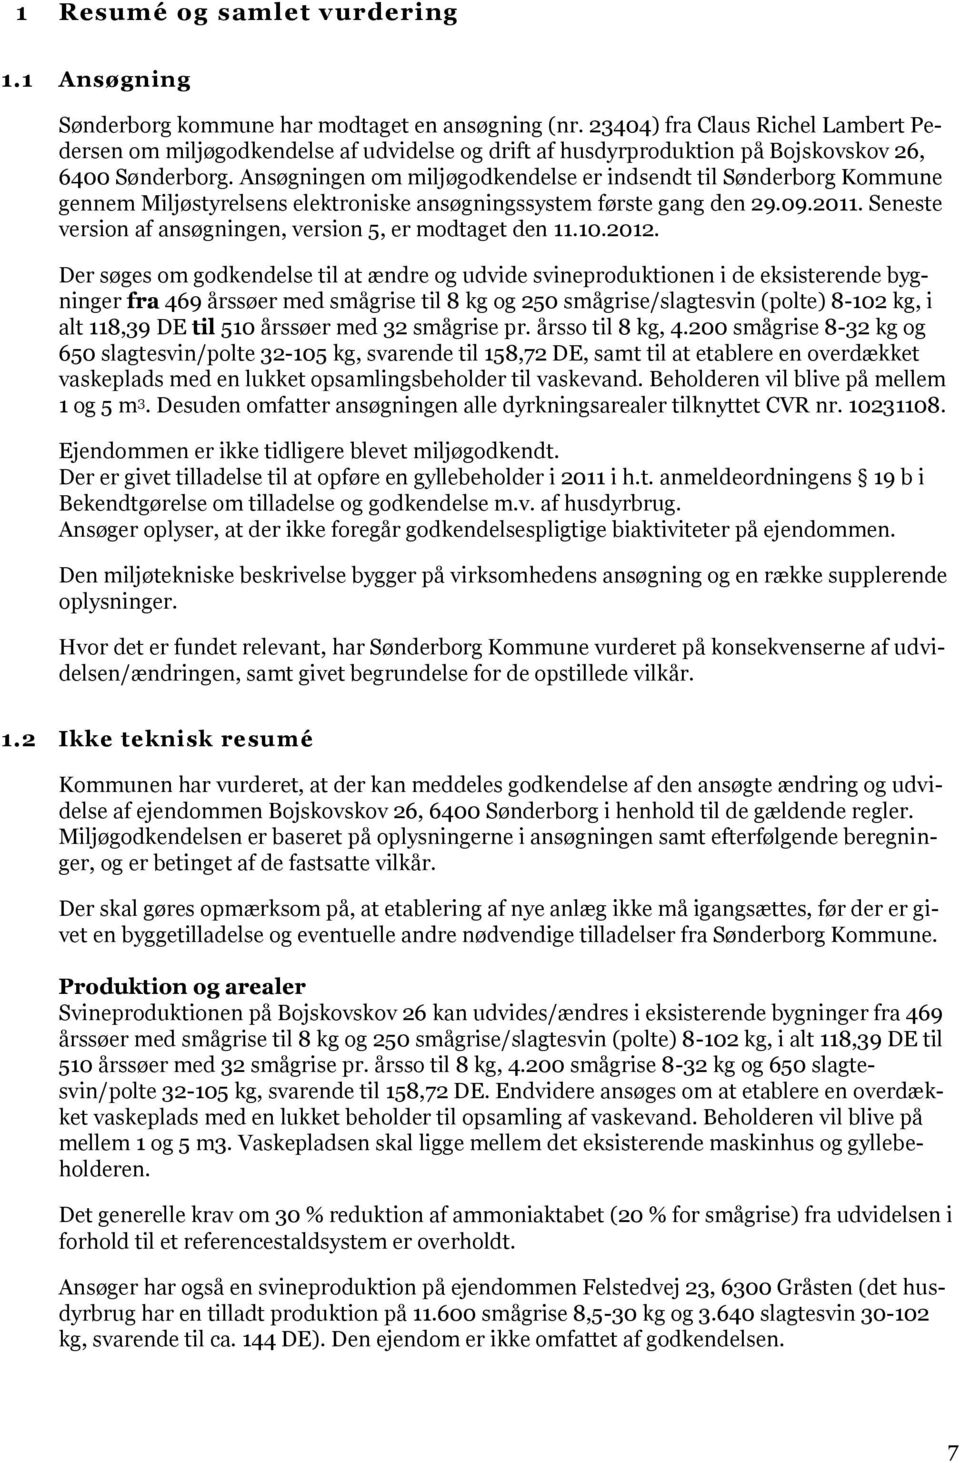 Ansøgningen om miljøgodkendelse er indsendt til Sønderborg Kommune gennem Miljøstyrelsens elektroniske ansøgningssystem første gang den 29.09.2011.